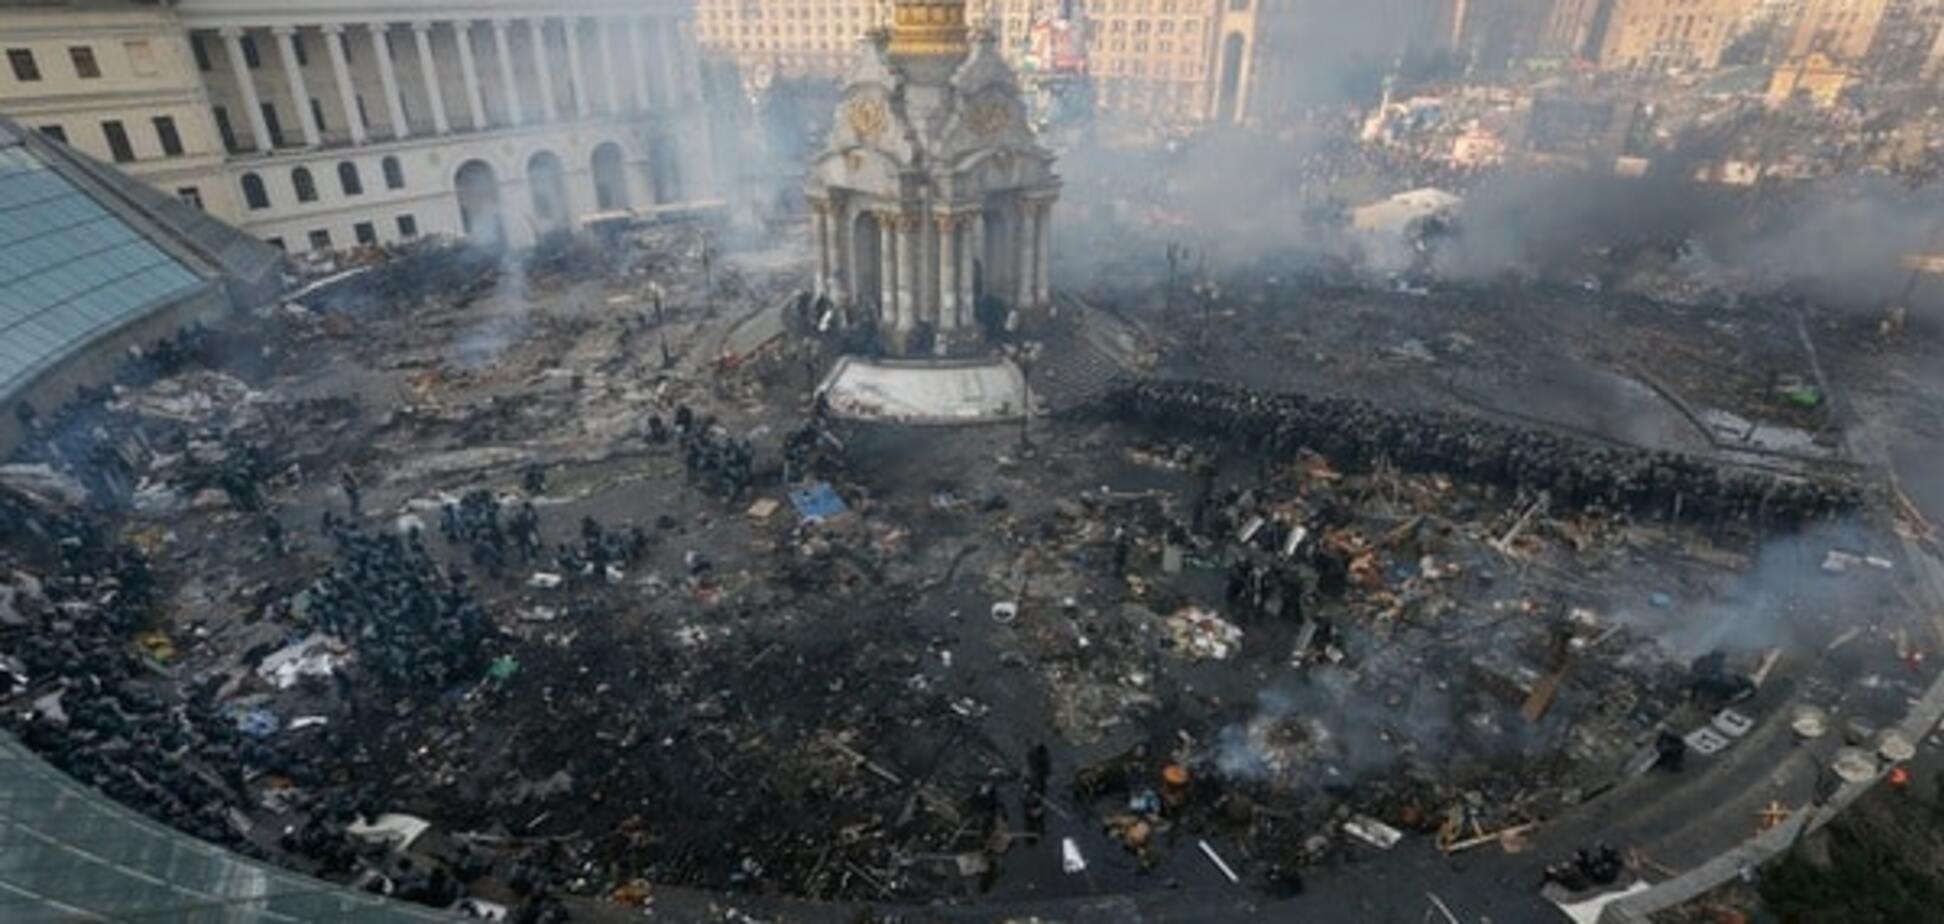 Во время Майдана власть разработала план разгона, который не исключал убийств - ГПУ